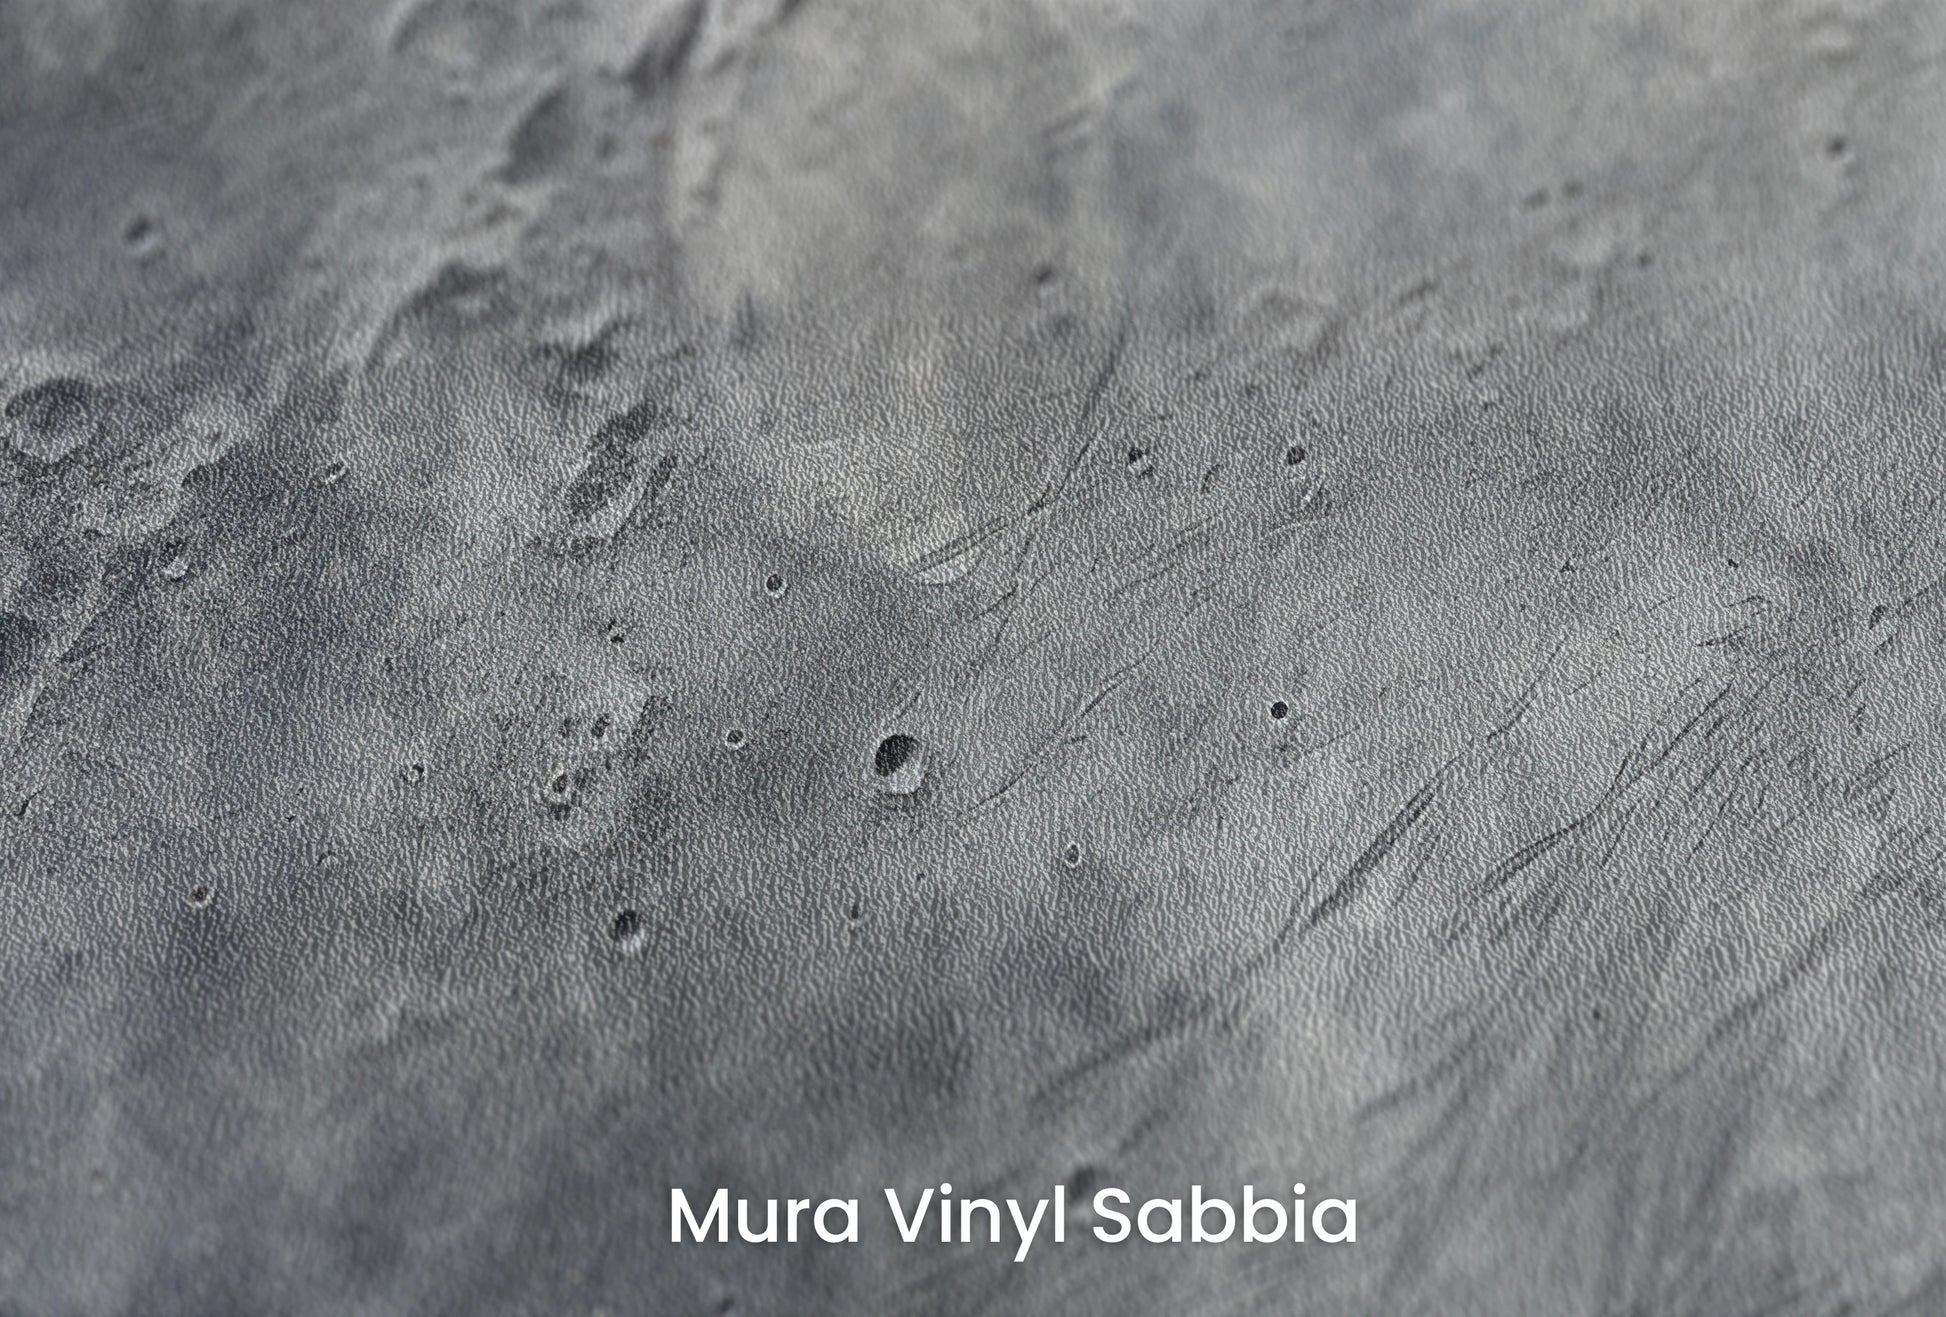 Zbliżenie na artystyczną fototapetę o nazwie Moonlight Sonata na podłożu Mura Vinyl Sabbia struktura grubego ziarna piasku.